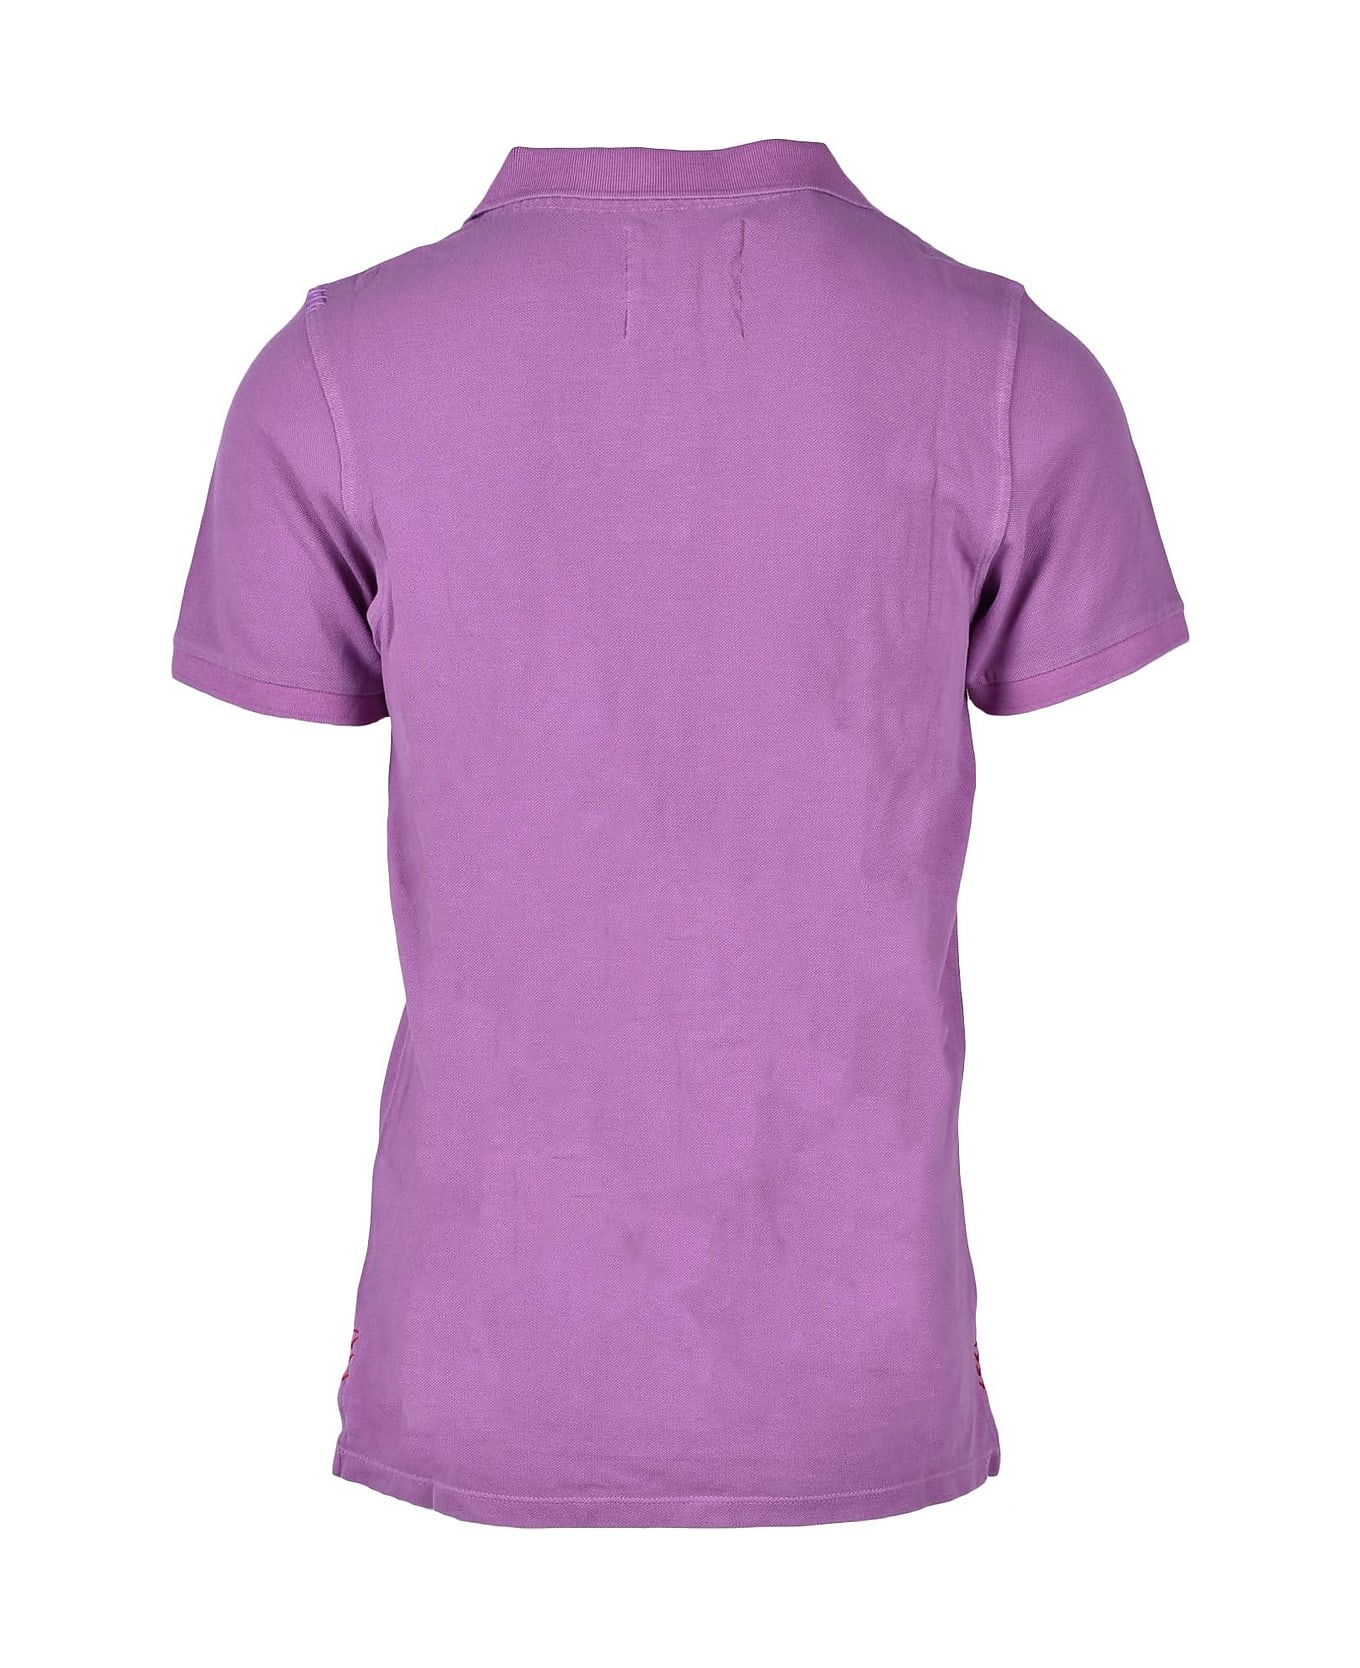 Project e Men's Violet Shirt - Purple